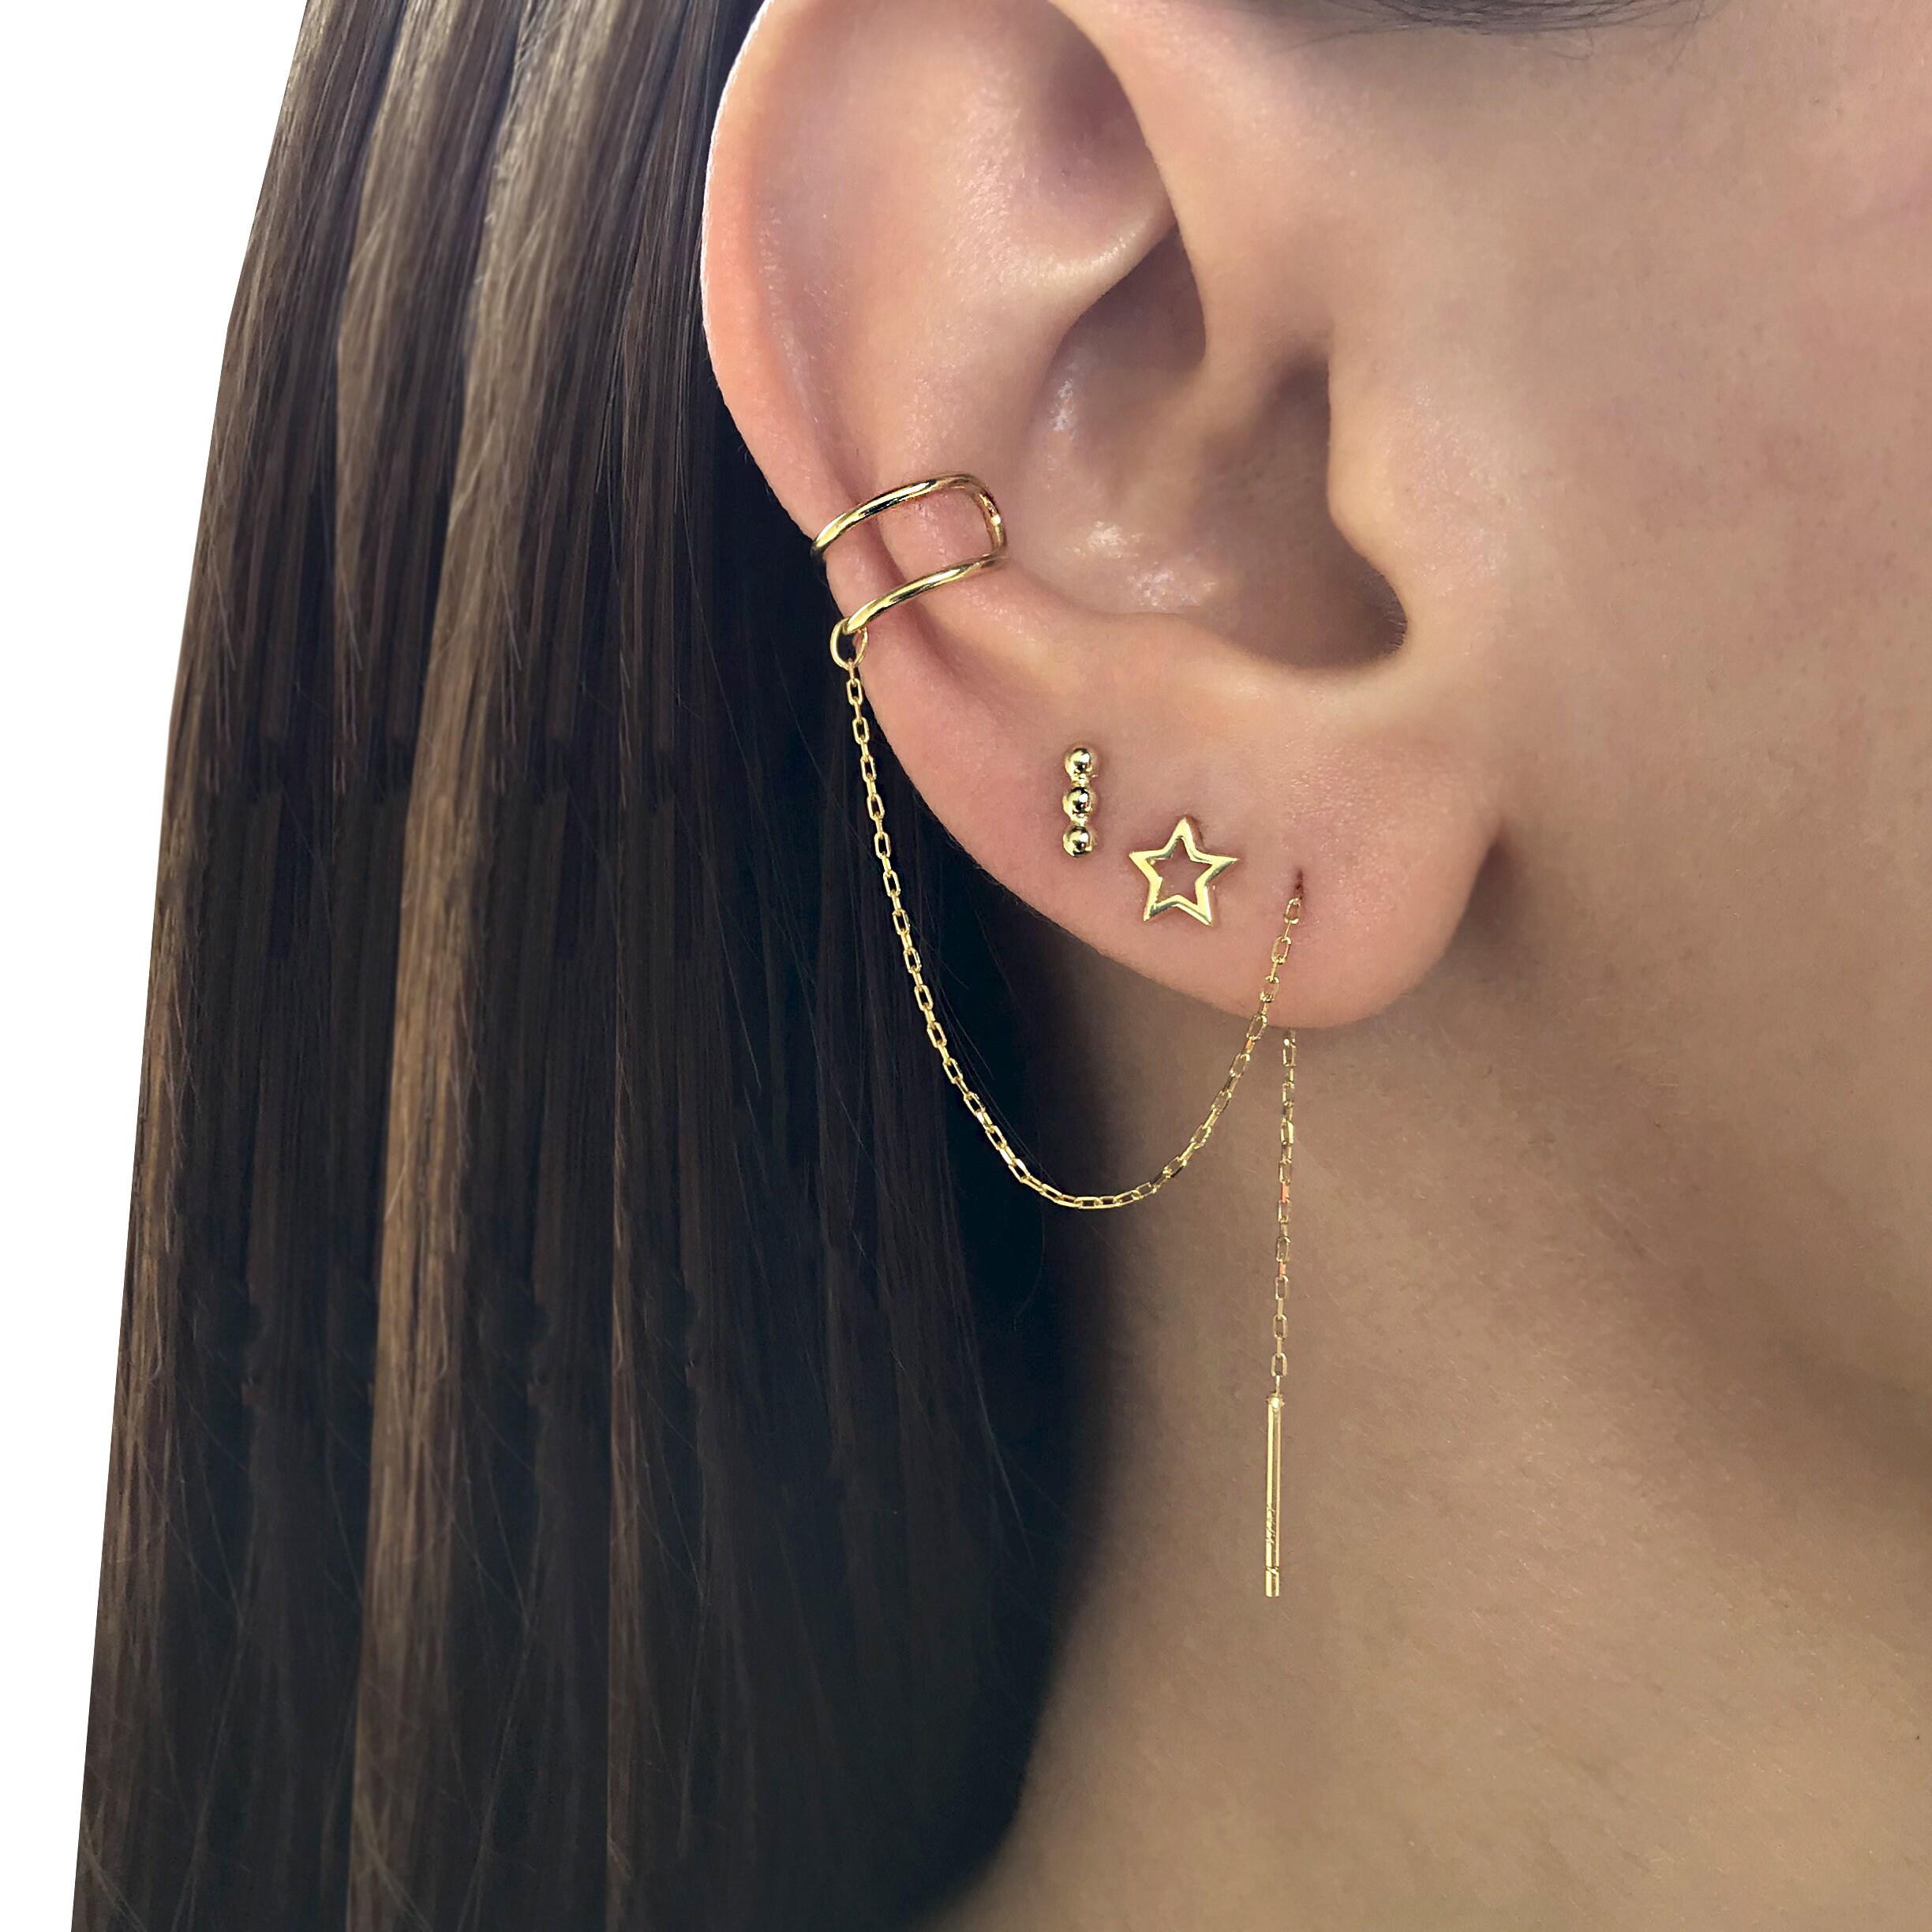 Ear Cuff Earrings Chains | Gold Snake Chain Drop Earring | Chain Ear Cuff  Jewelry - U - Aliexpress